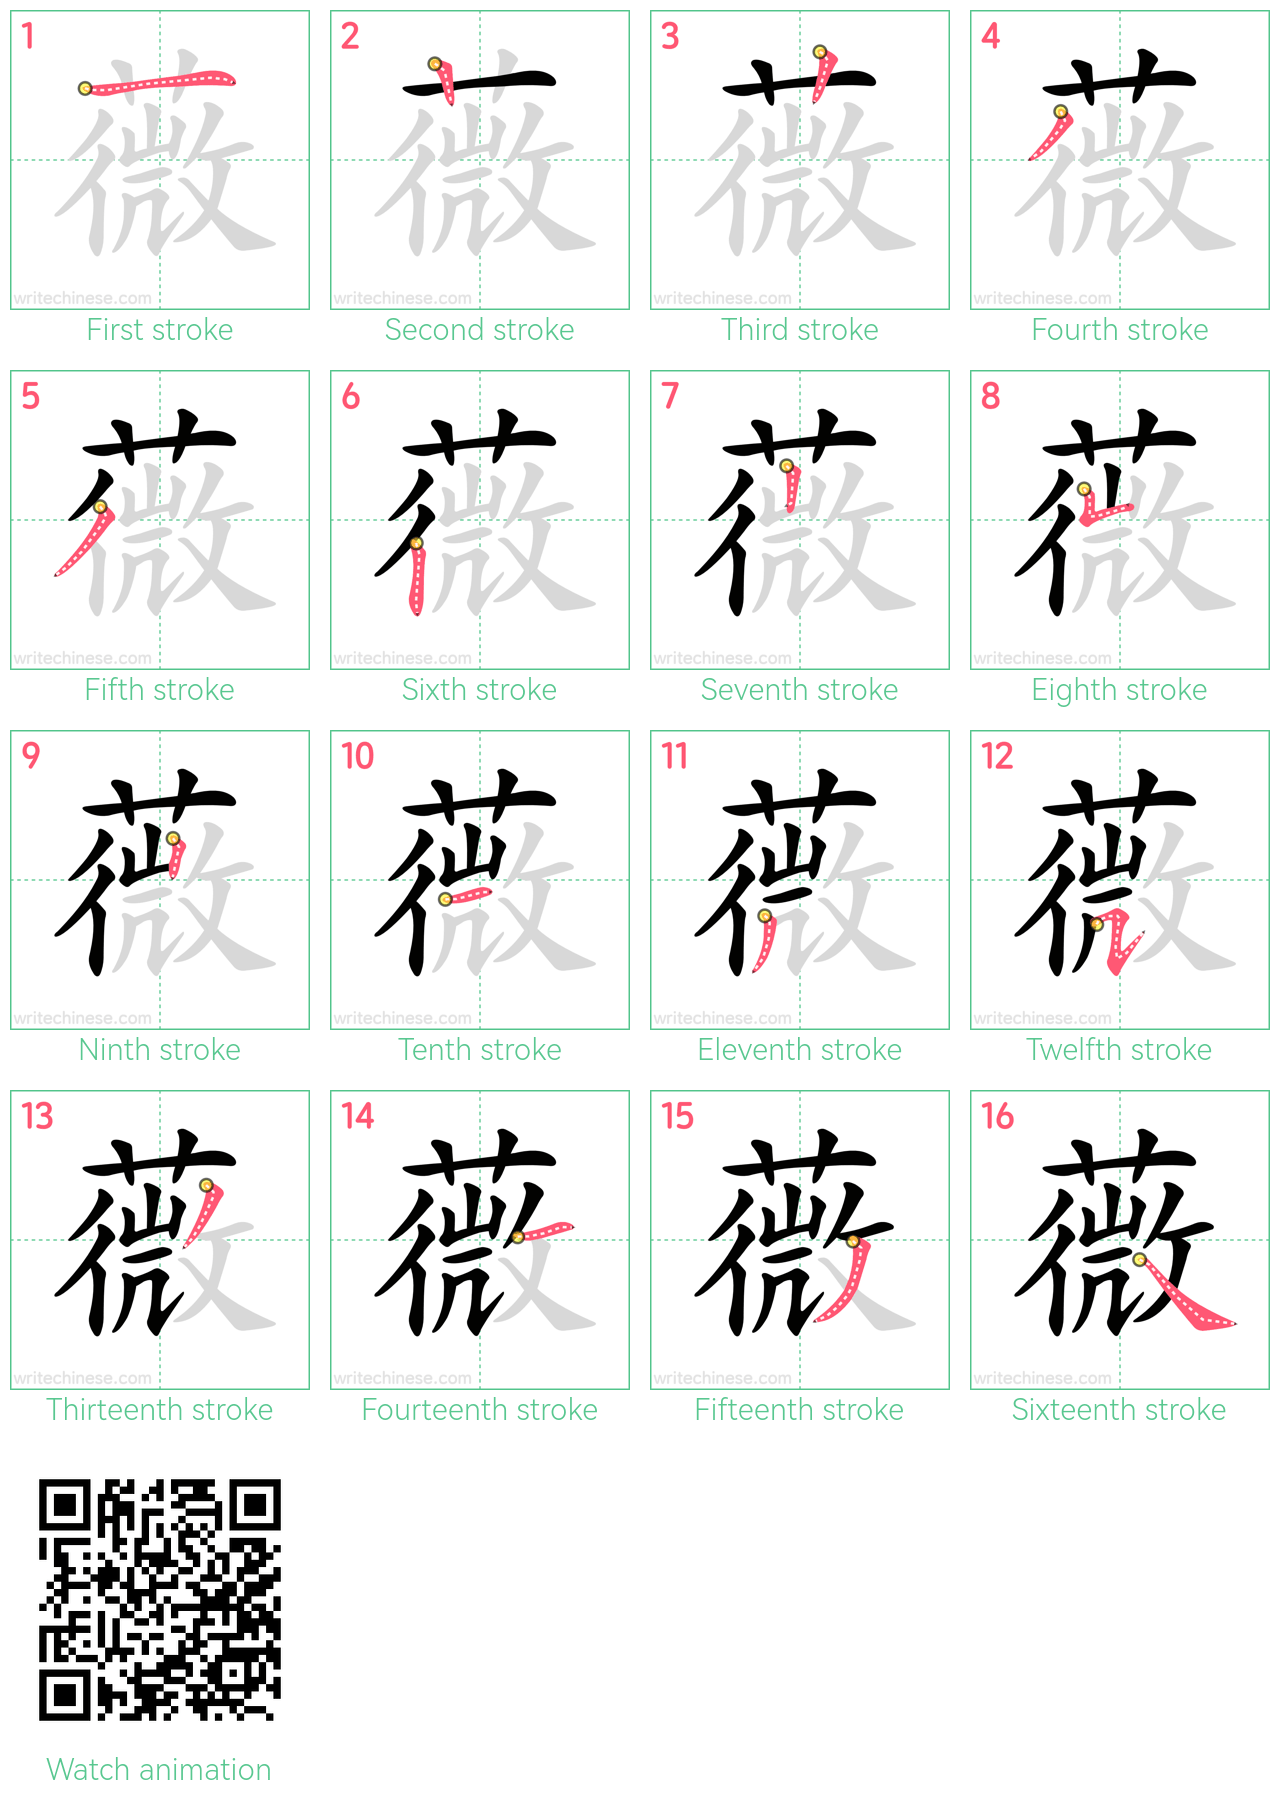 薇 step-by-step stroke order diagrams